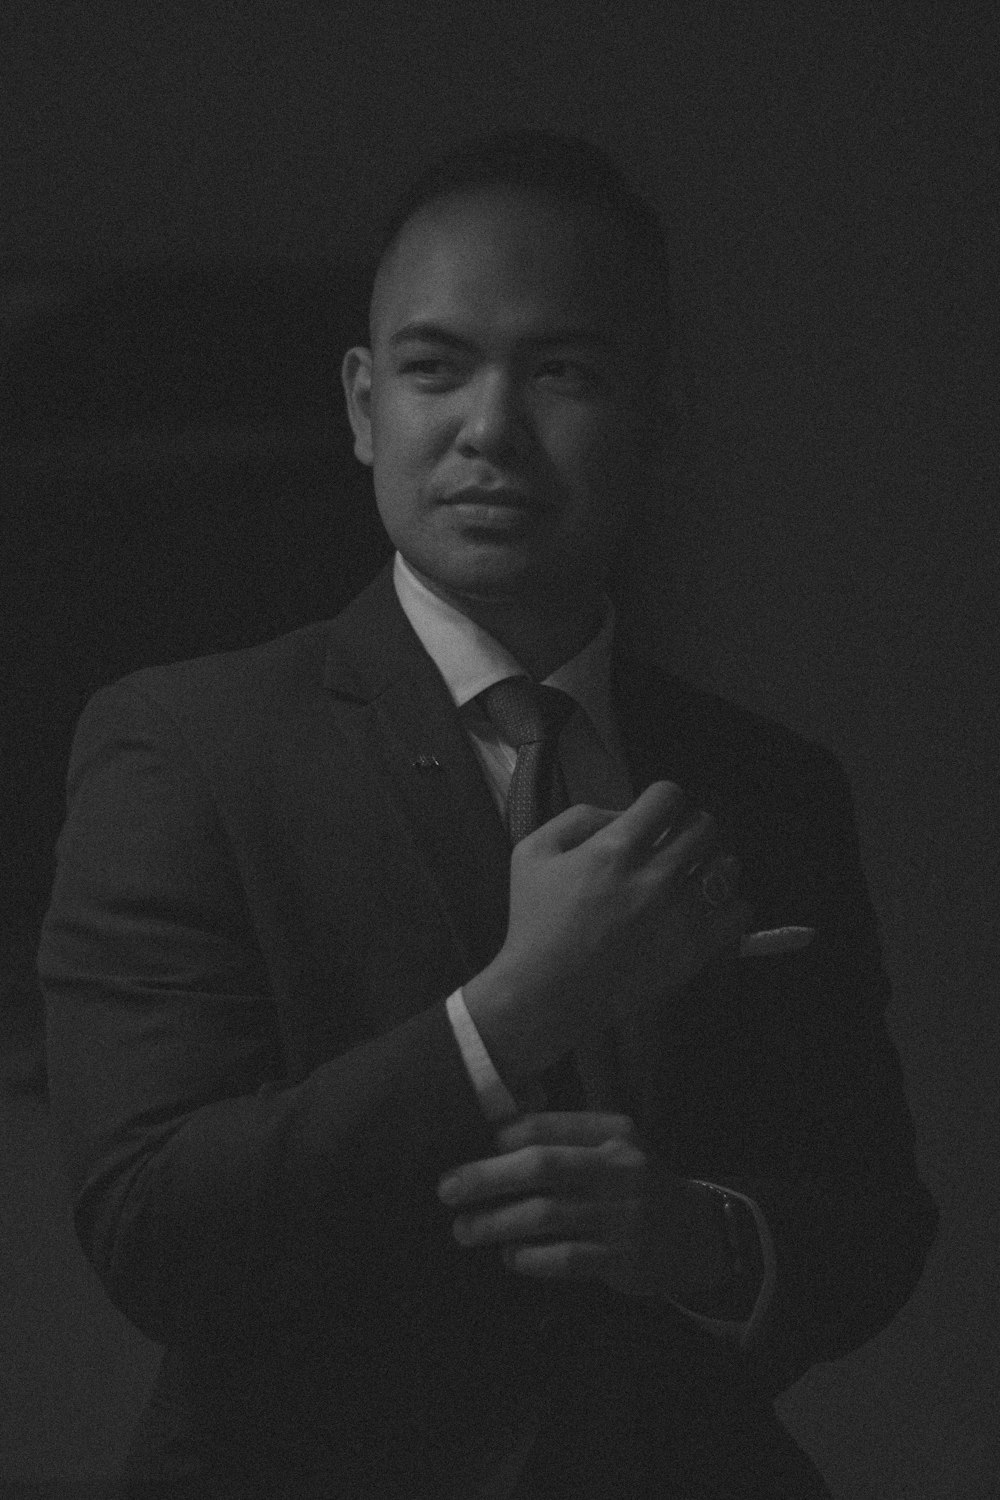 Une photo en noir et blanc d’un homme en costume